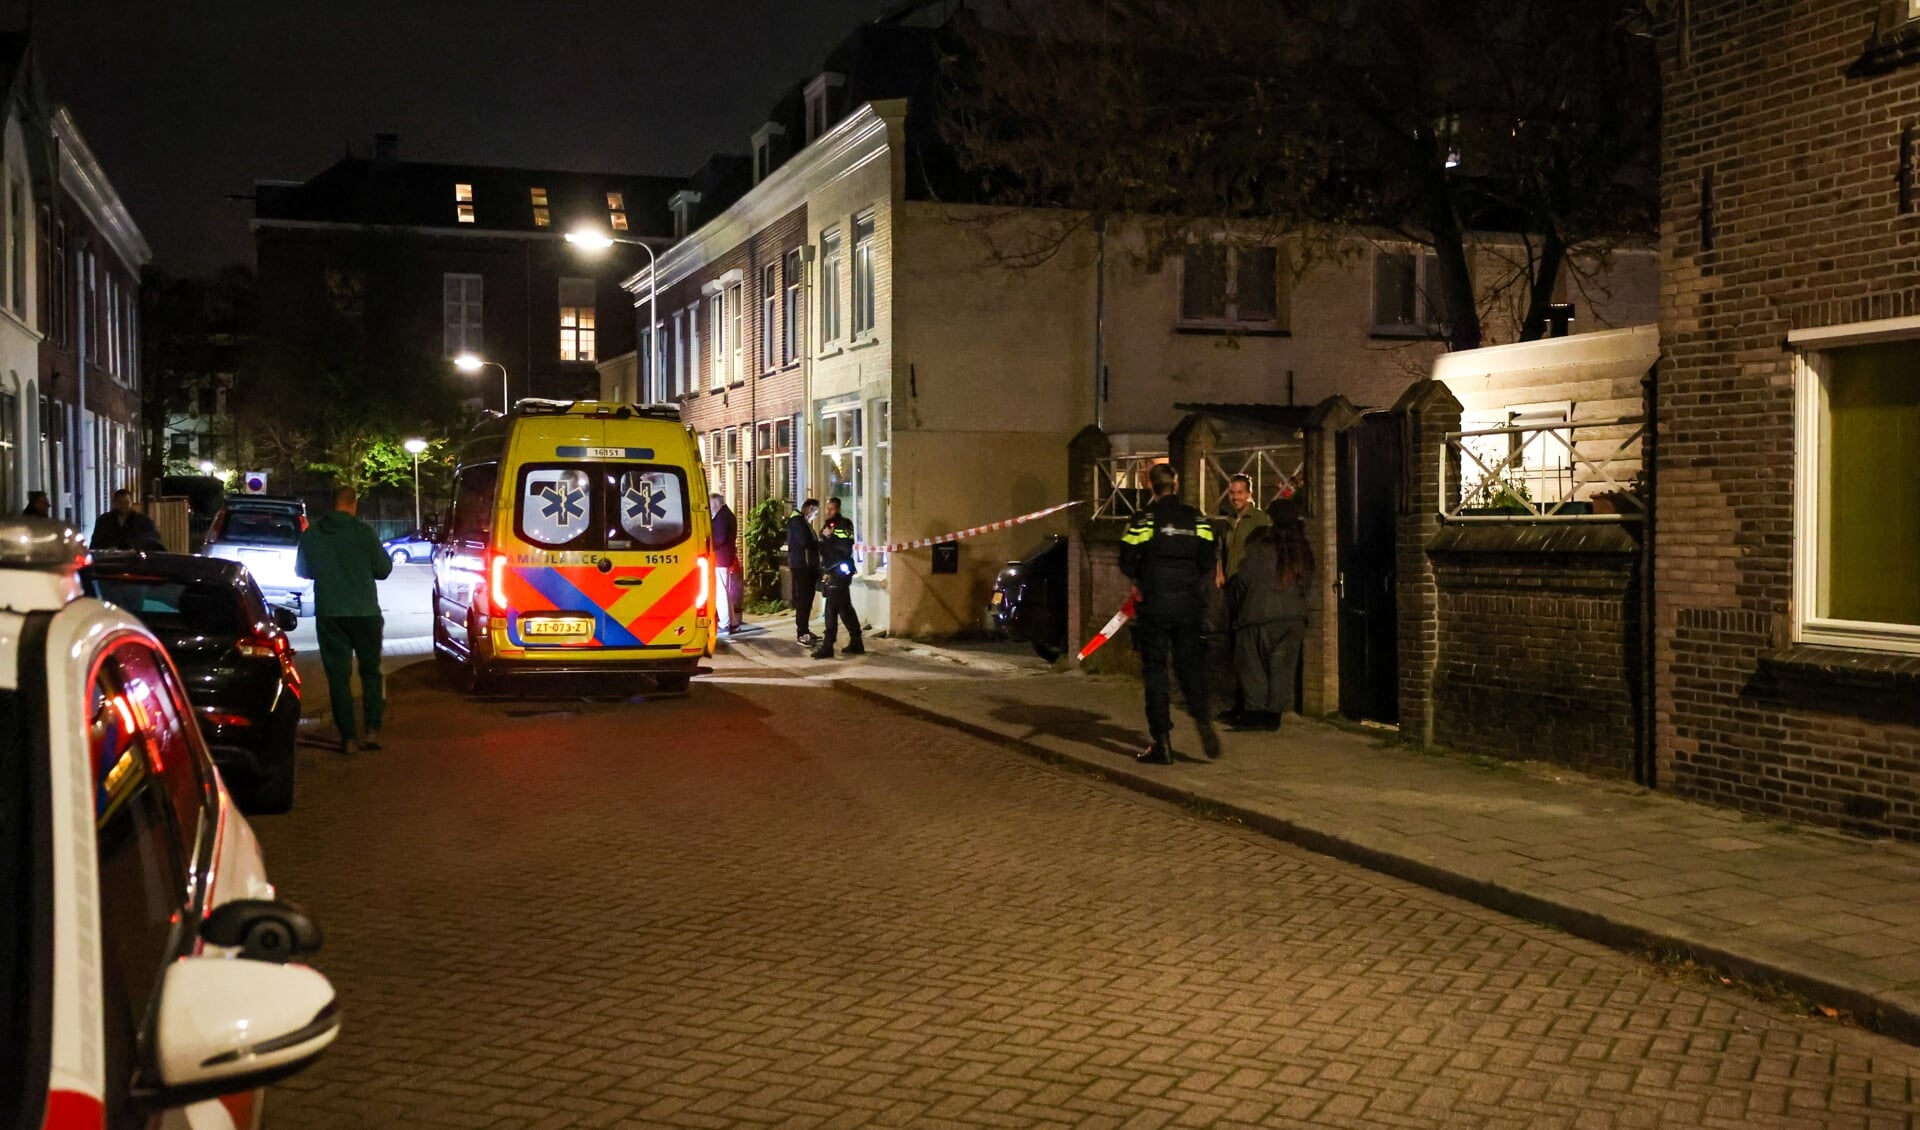 Aan de Adriaan Vlackstraat was vanavond rond 22.55 een overval aan een woning.